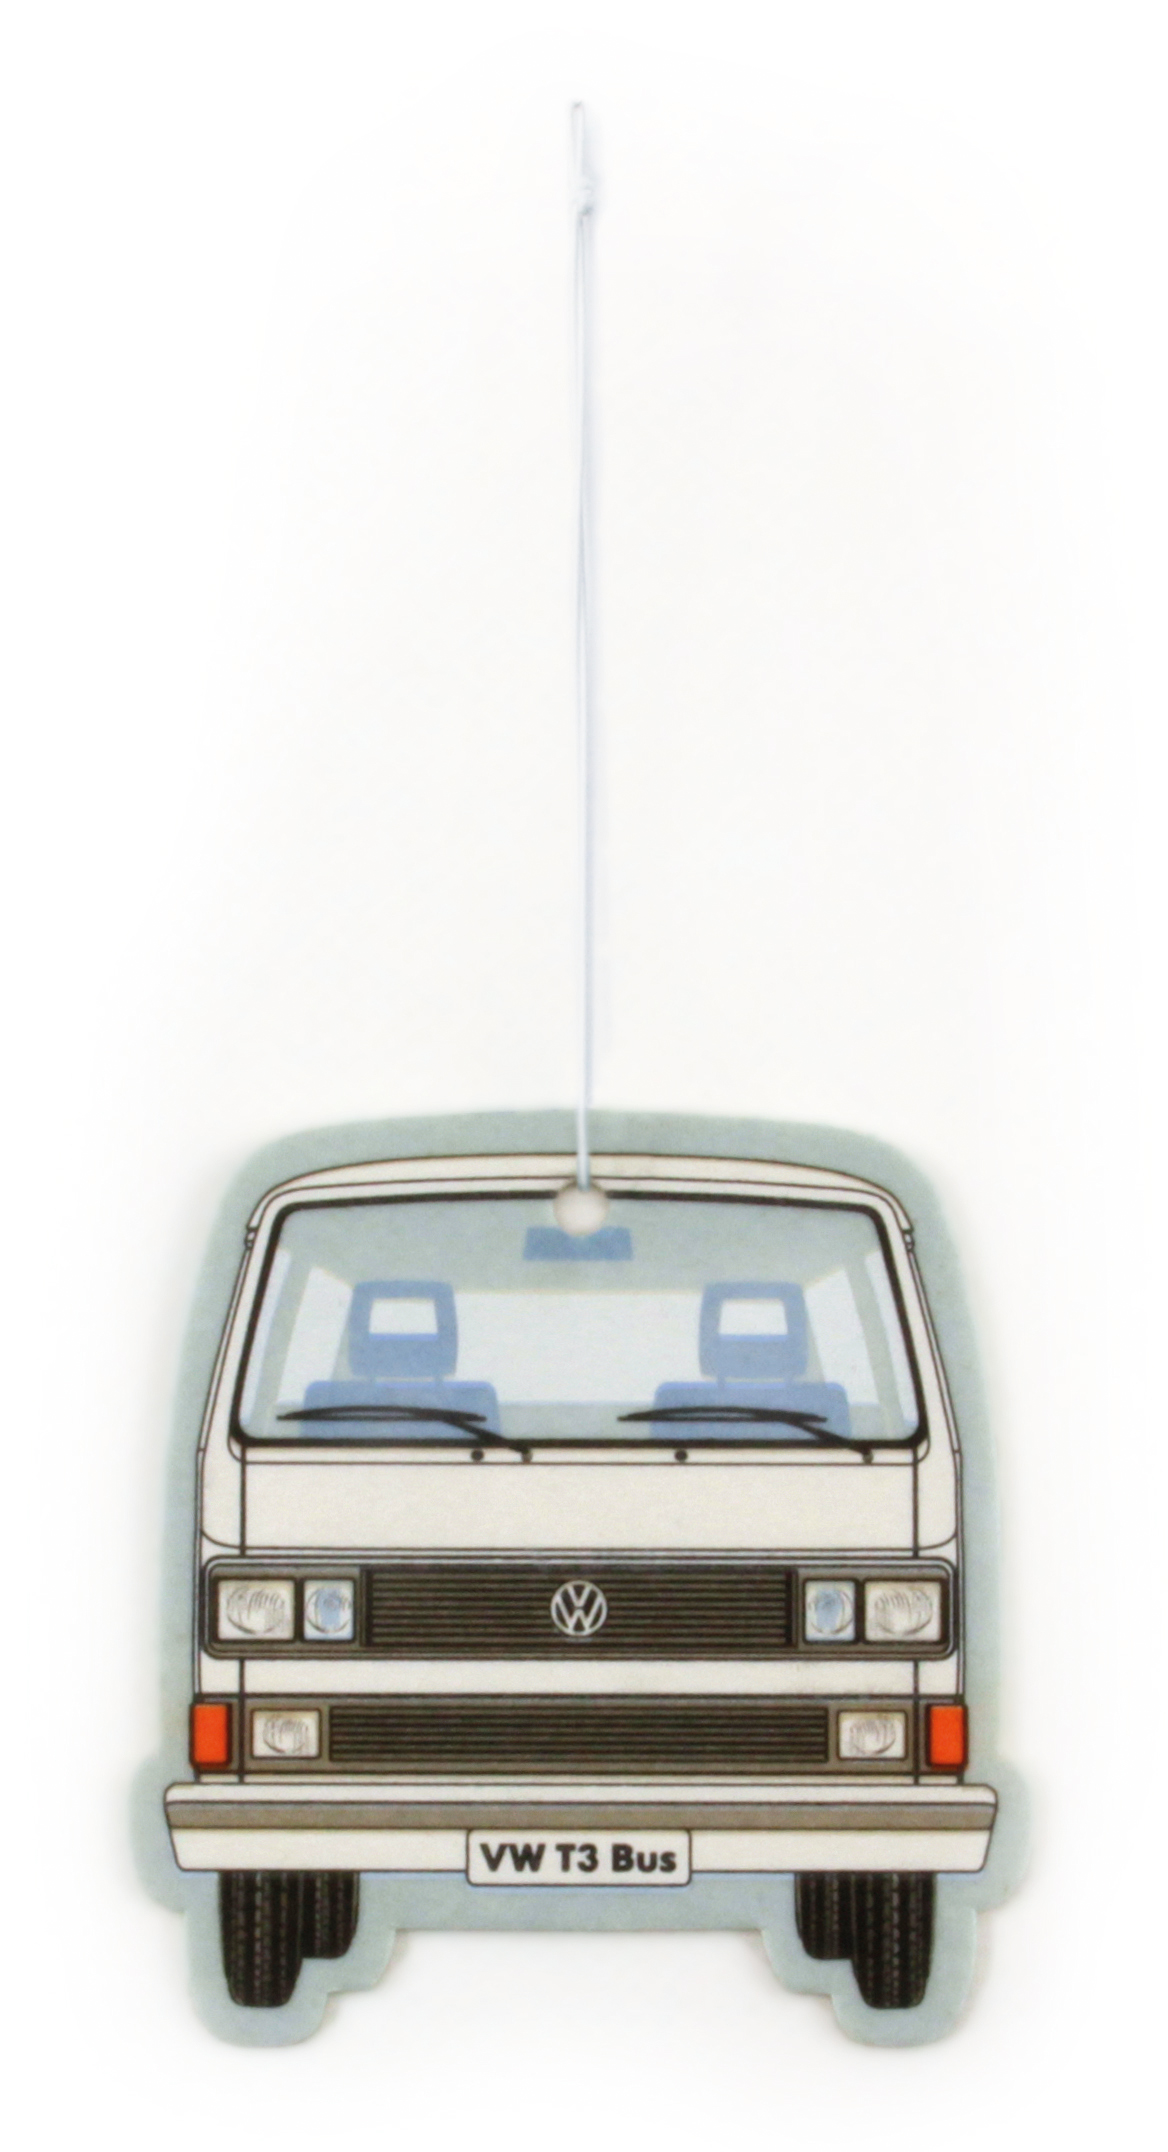 VW T3 Bulli bus air freshener